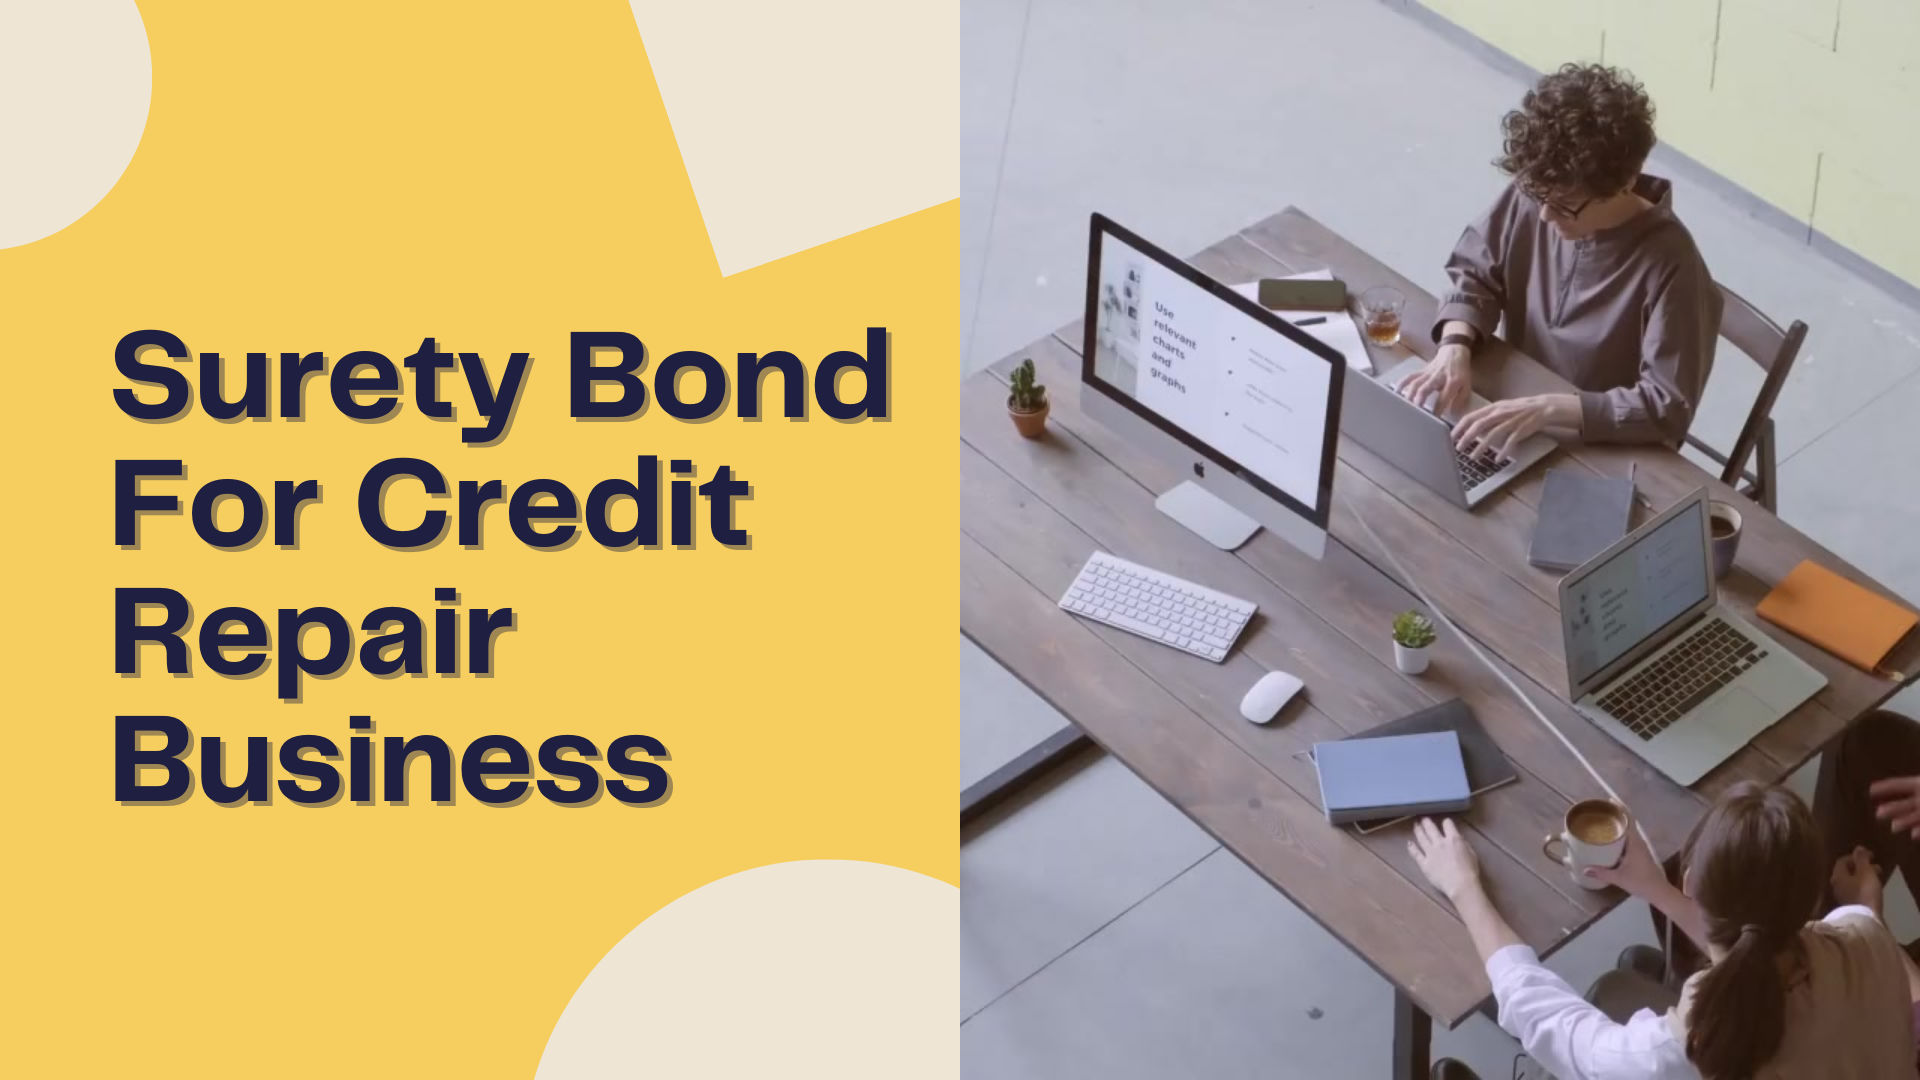 Surety Bond-Surety Bond For Credit Repair Business